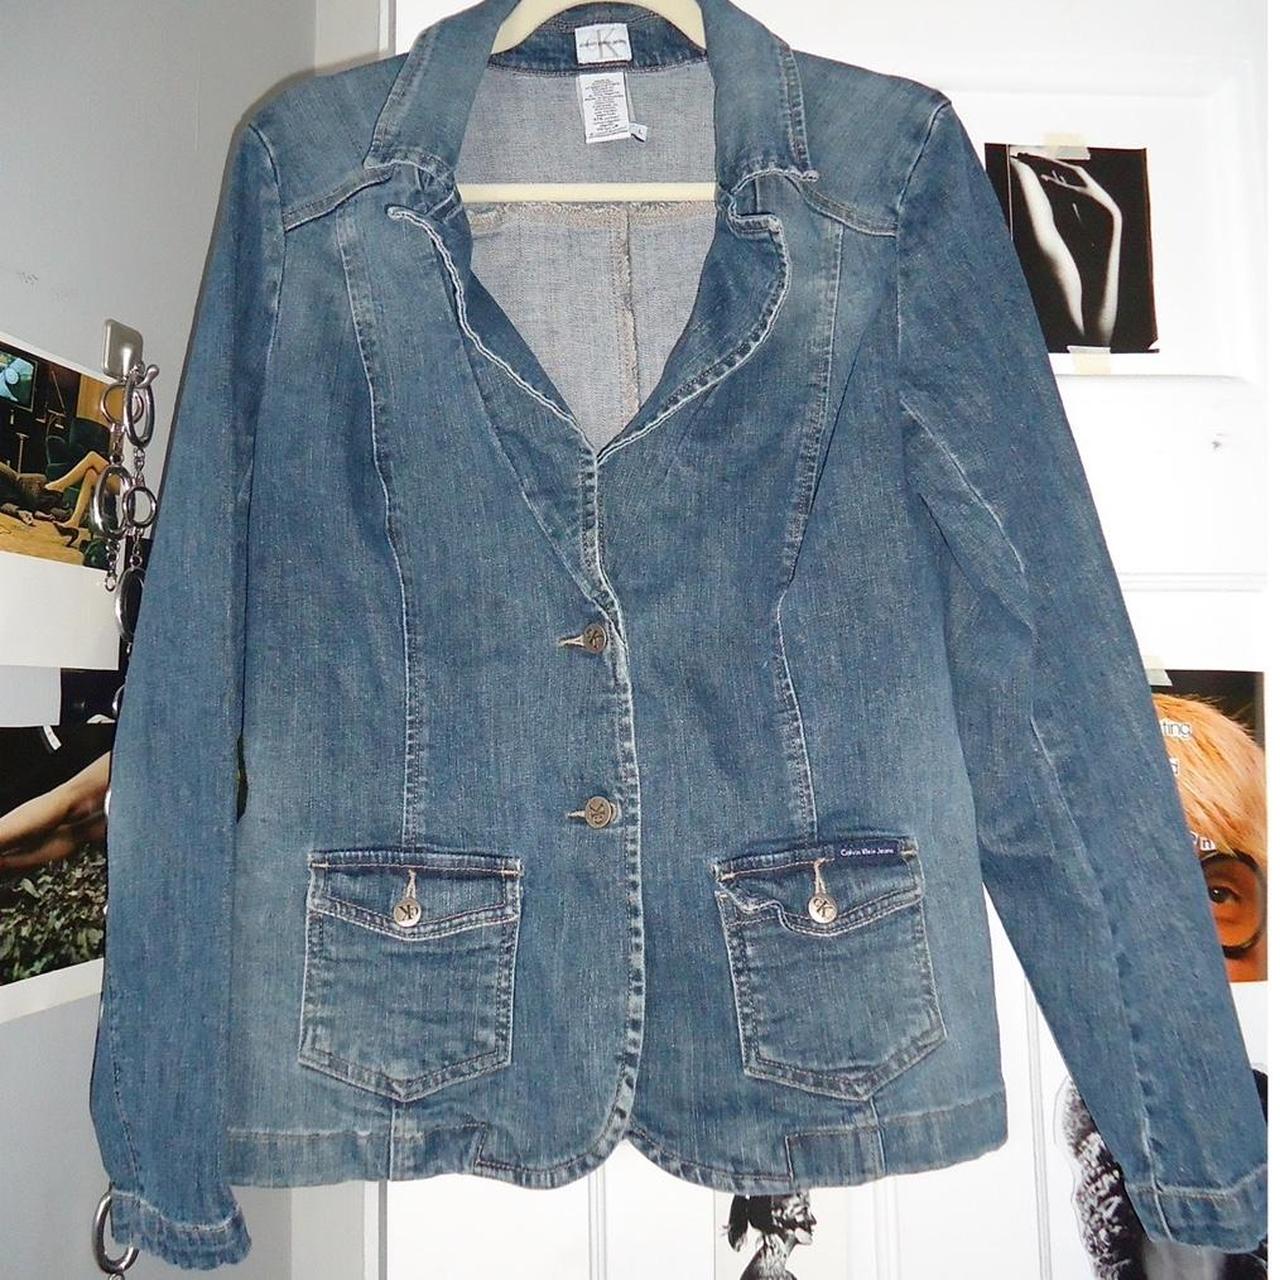 Buy HOOBEE DENIM Women's Long Sleeve Denim Blazer Jacket Suits at Amazon.in